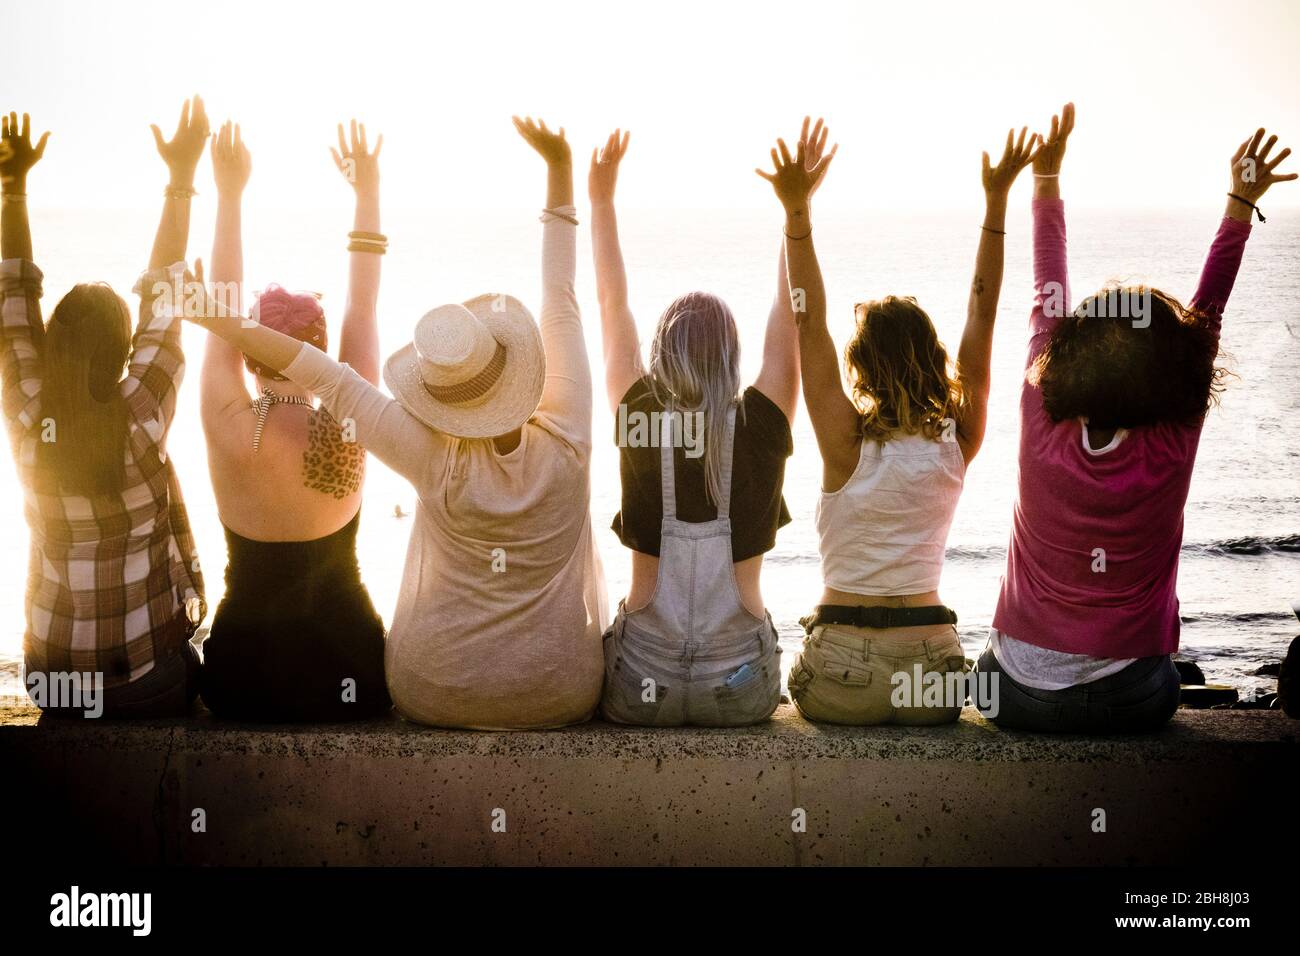 Rückansicht der Gruppe von Frauen kaukasischen Freunde genießen bei Sonnenuntergang mit Meer im Hintergrund - Erfolg und Zufriedenheit Konzept für nette Menschen zusammen mit Freude - Freundschaft und Urlaub Stockfoto